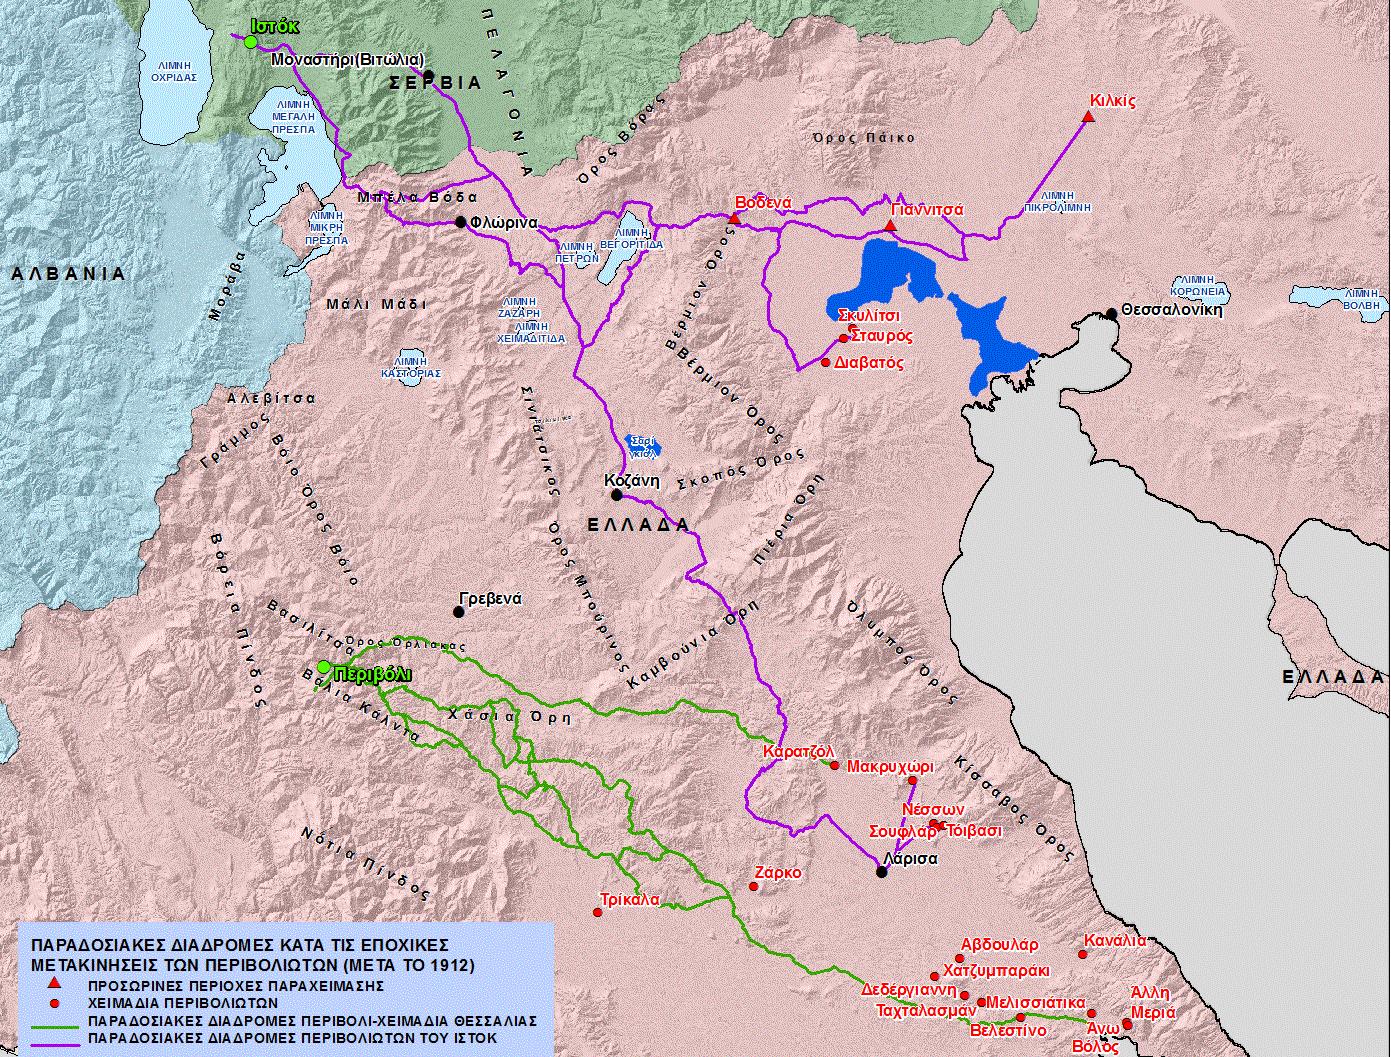 Χάρτης 7. Οι παραδοσιακές διαδρομές των Περιβολιωτών από το Περιβόλι και το Ιστόκ προς τα χειμαδιά της Θεσσαλίας και της Κεντρ. Μακεδονίας, μετά το 1912 [κλίμακα 1:750,000].